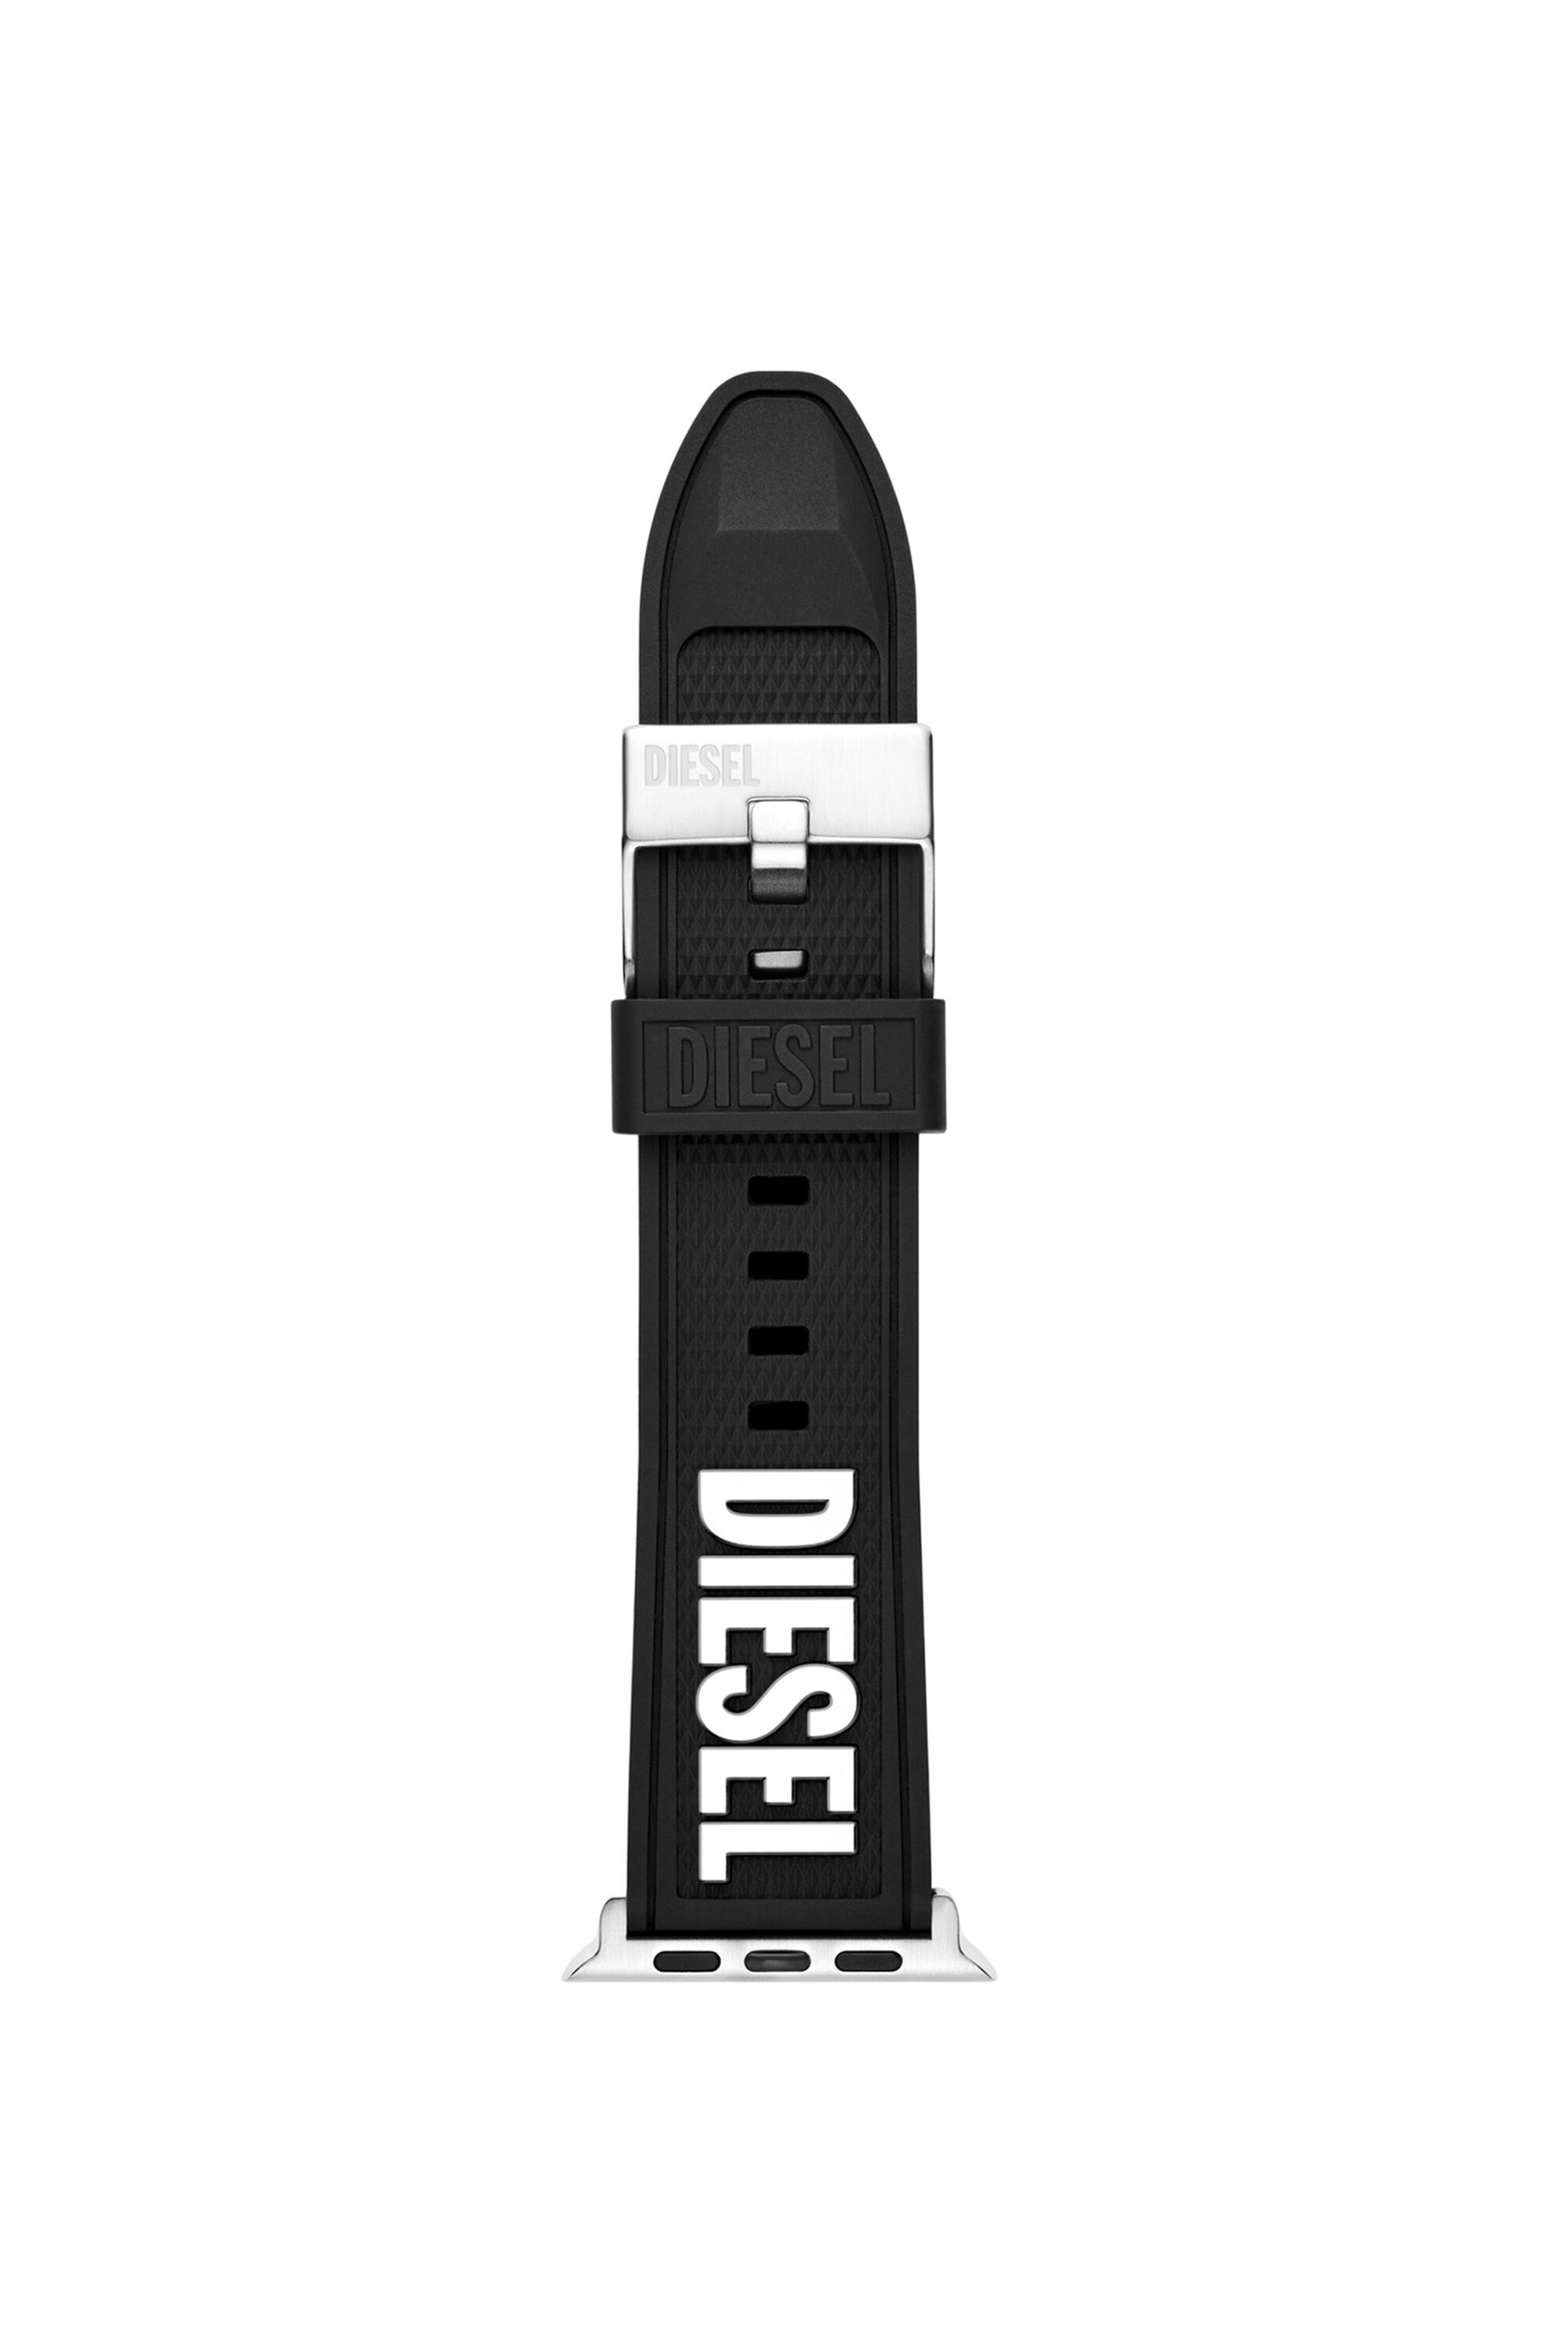 Diesel - DSS011, Schwarz - Image 1